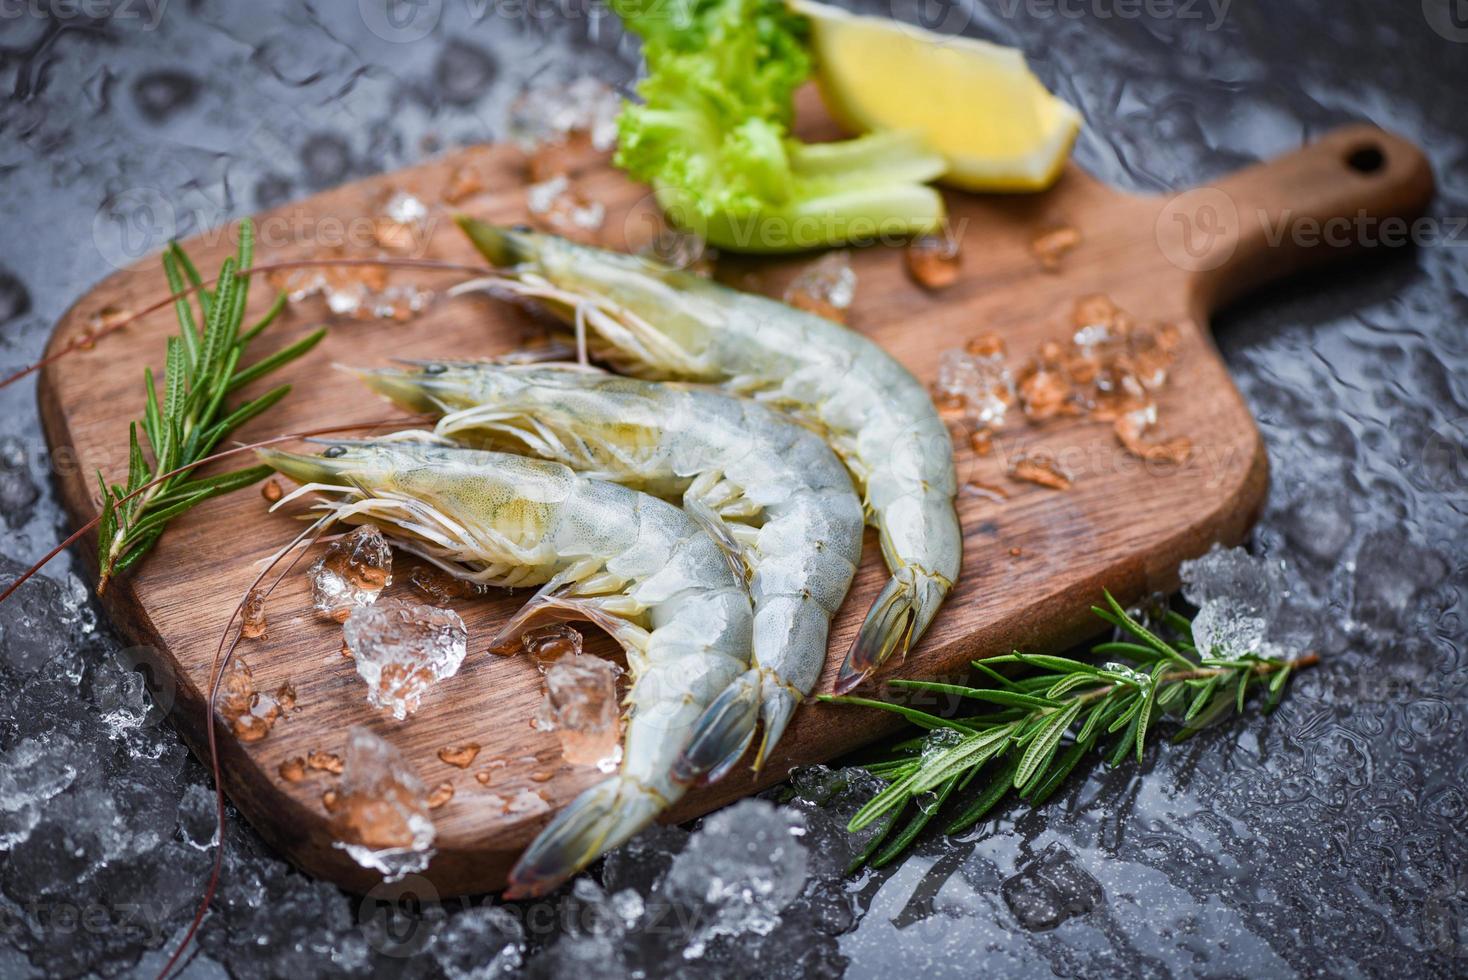 crevettes fraîches sur une planche à découper en bois avec des ingrédients de romarin herbes et épices pour la cuisson des fruits de mer - crevettes crues crevettes sur glace congelées au restaurant de fruits de mer photo